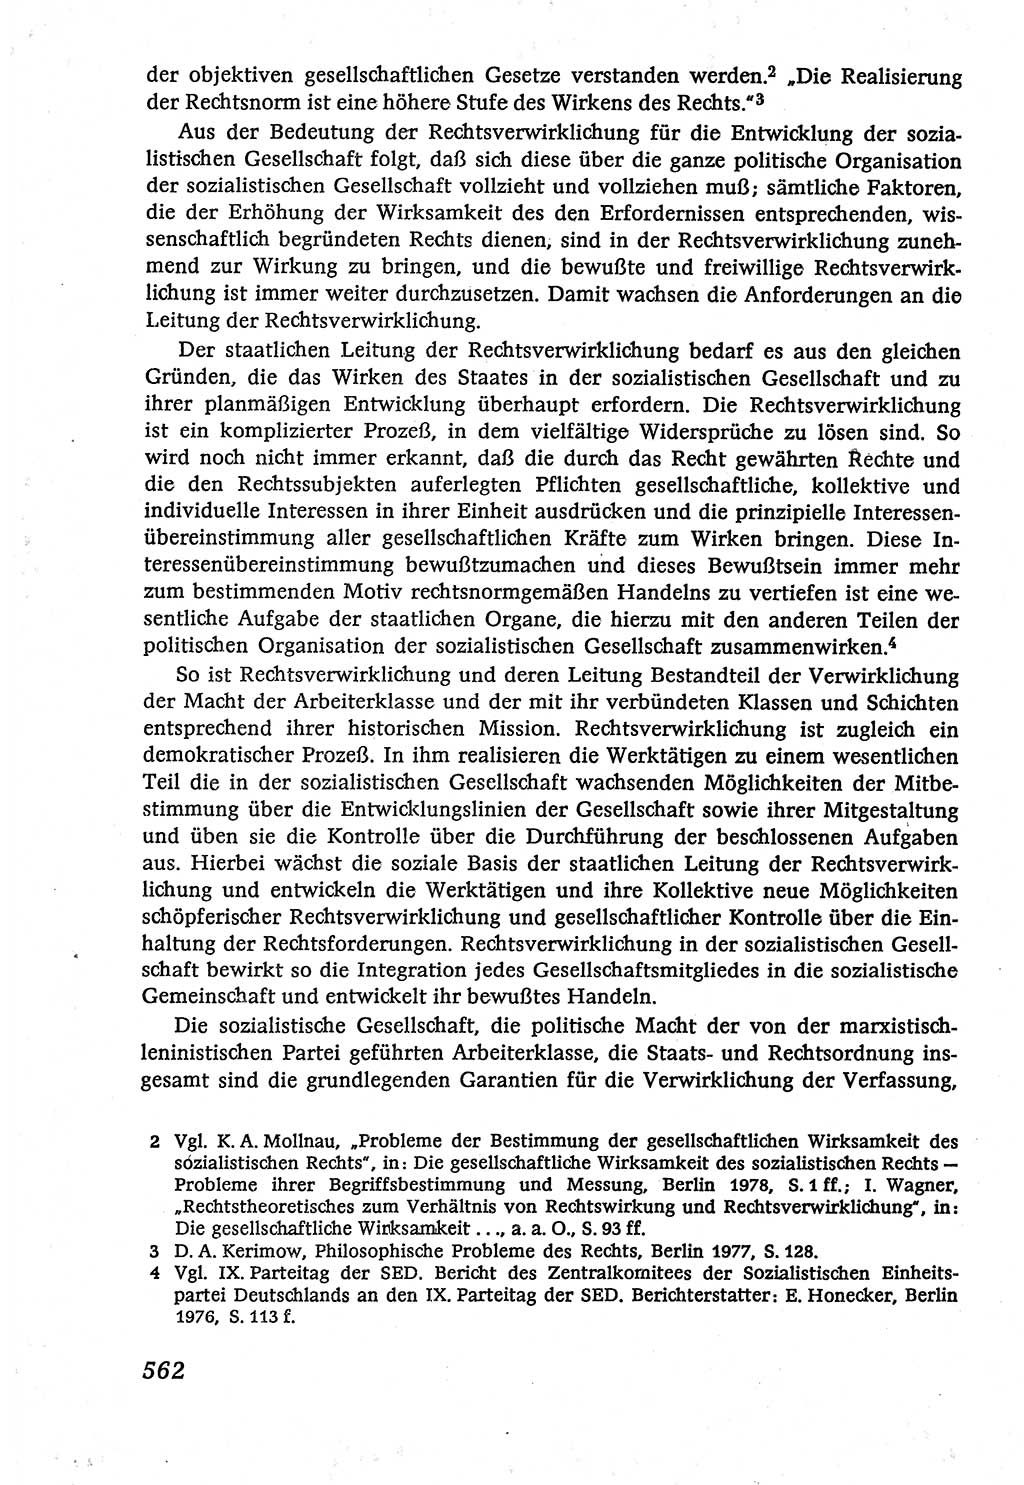 Marxistisch-leninistische (ML) Staats- und Rechtstheorie [Deutsche Demokratische Republik (DDR)], Lehrbuch 1980, Seite 562 (ML St.-R.-Th. DDR Lb. 1980, S. 562)